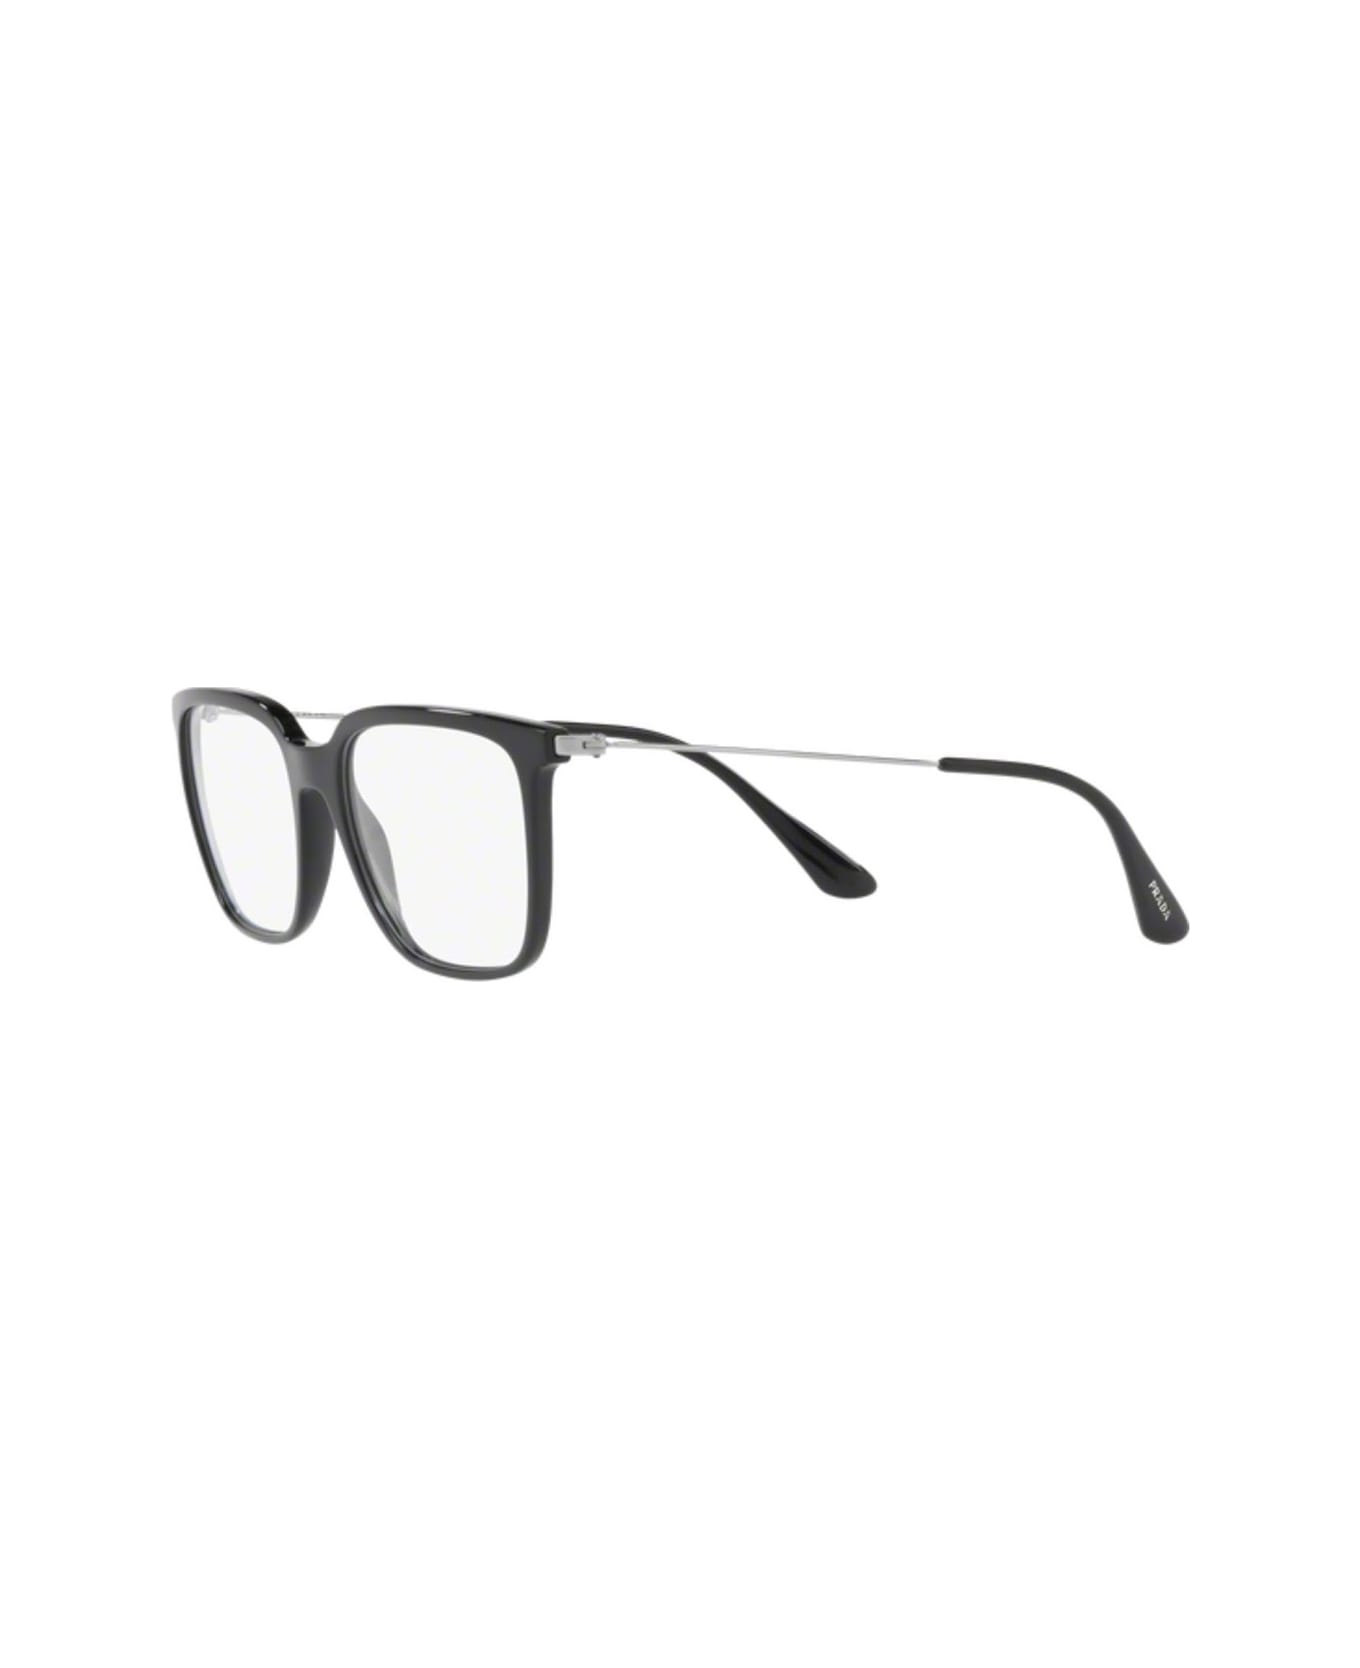 Prada Eyewear Pr 17tv Glasses - Nero アイウェア